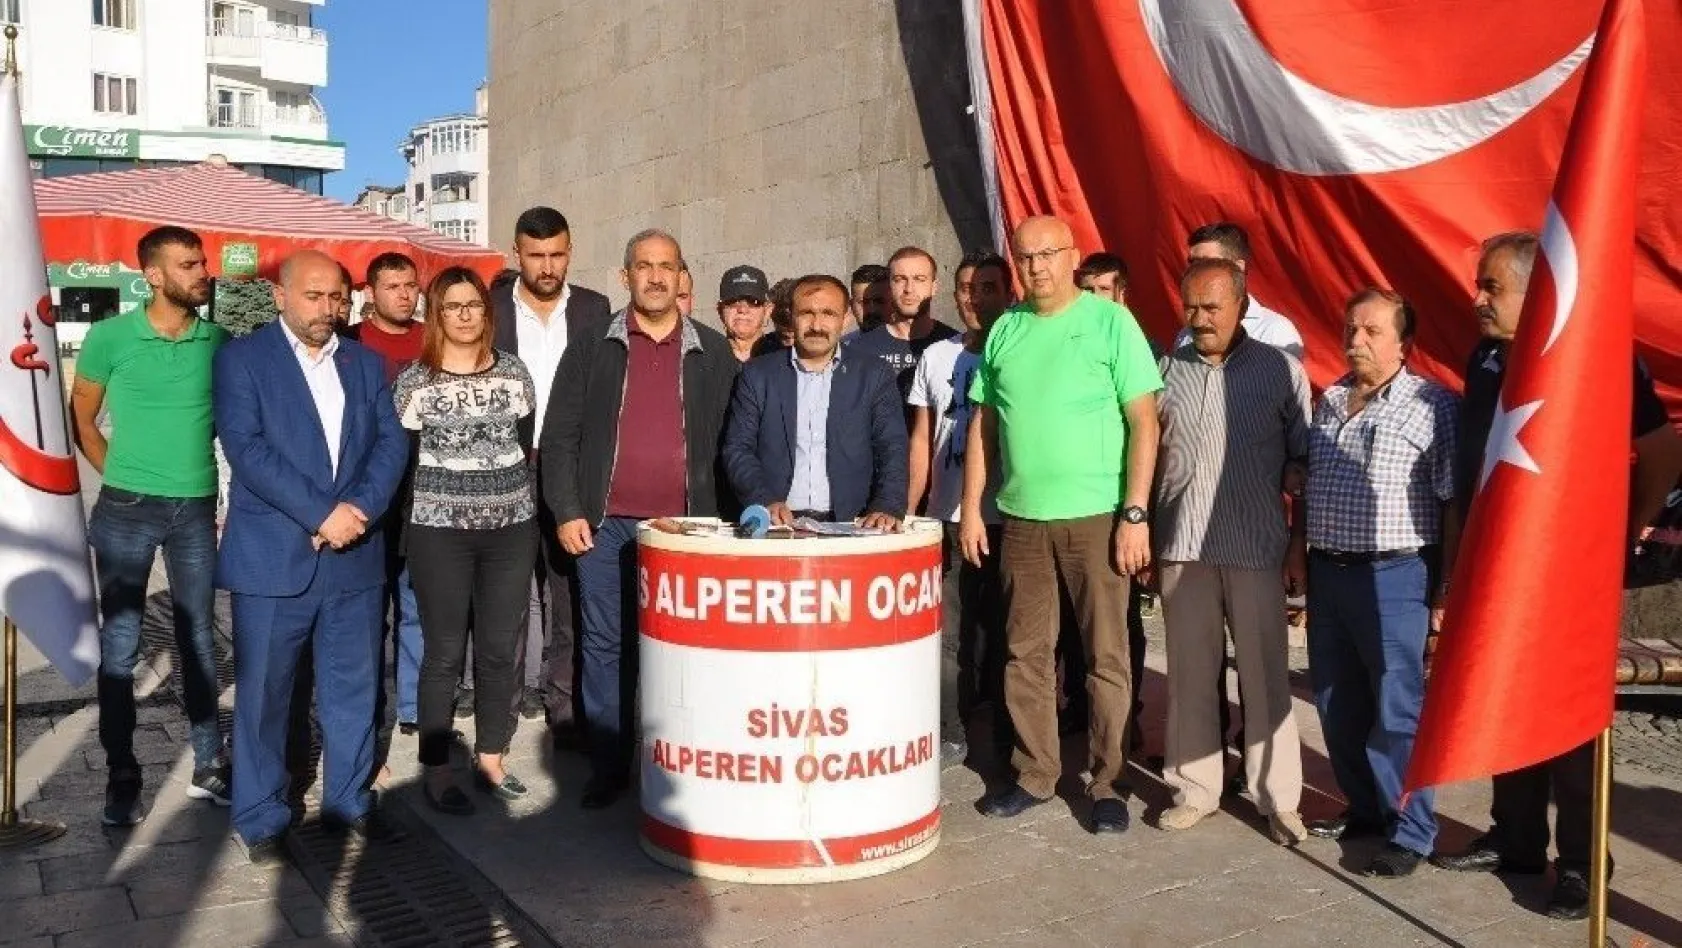 Alperen Ocakları Sivas İl Başkanı Çatalçam:
